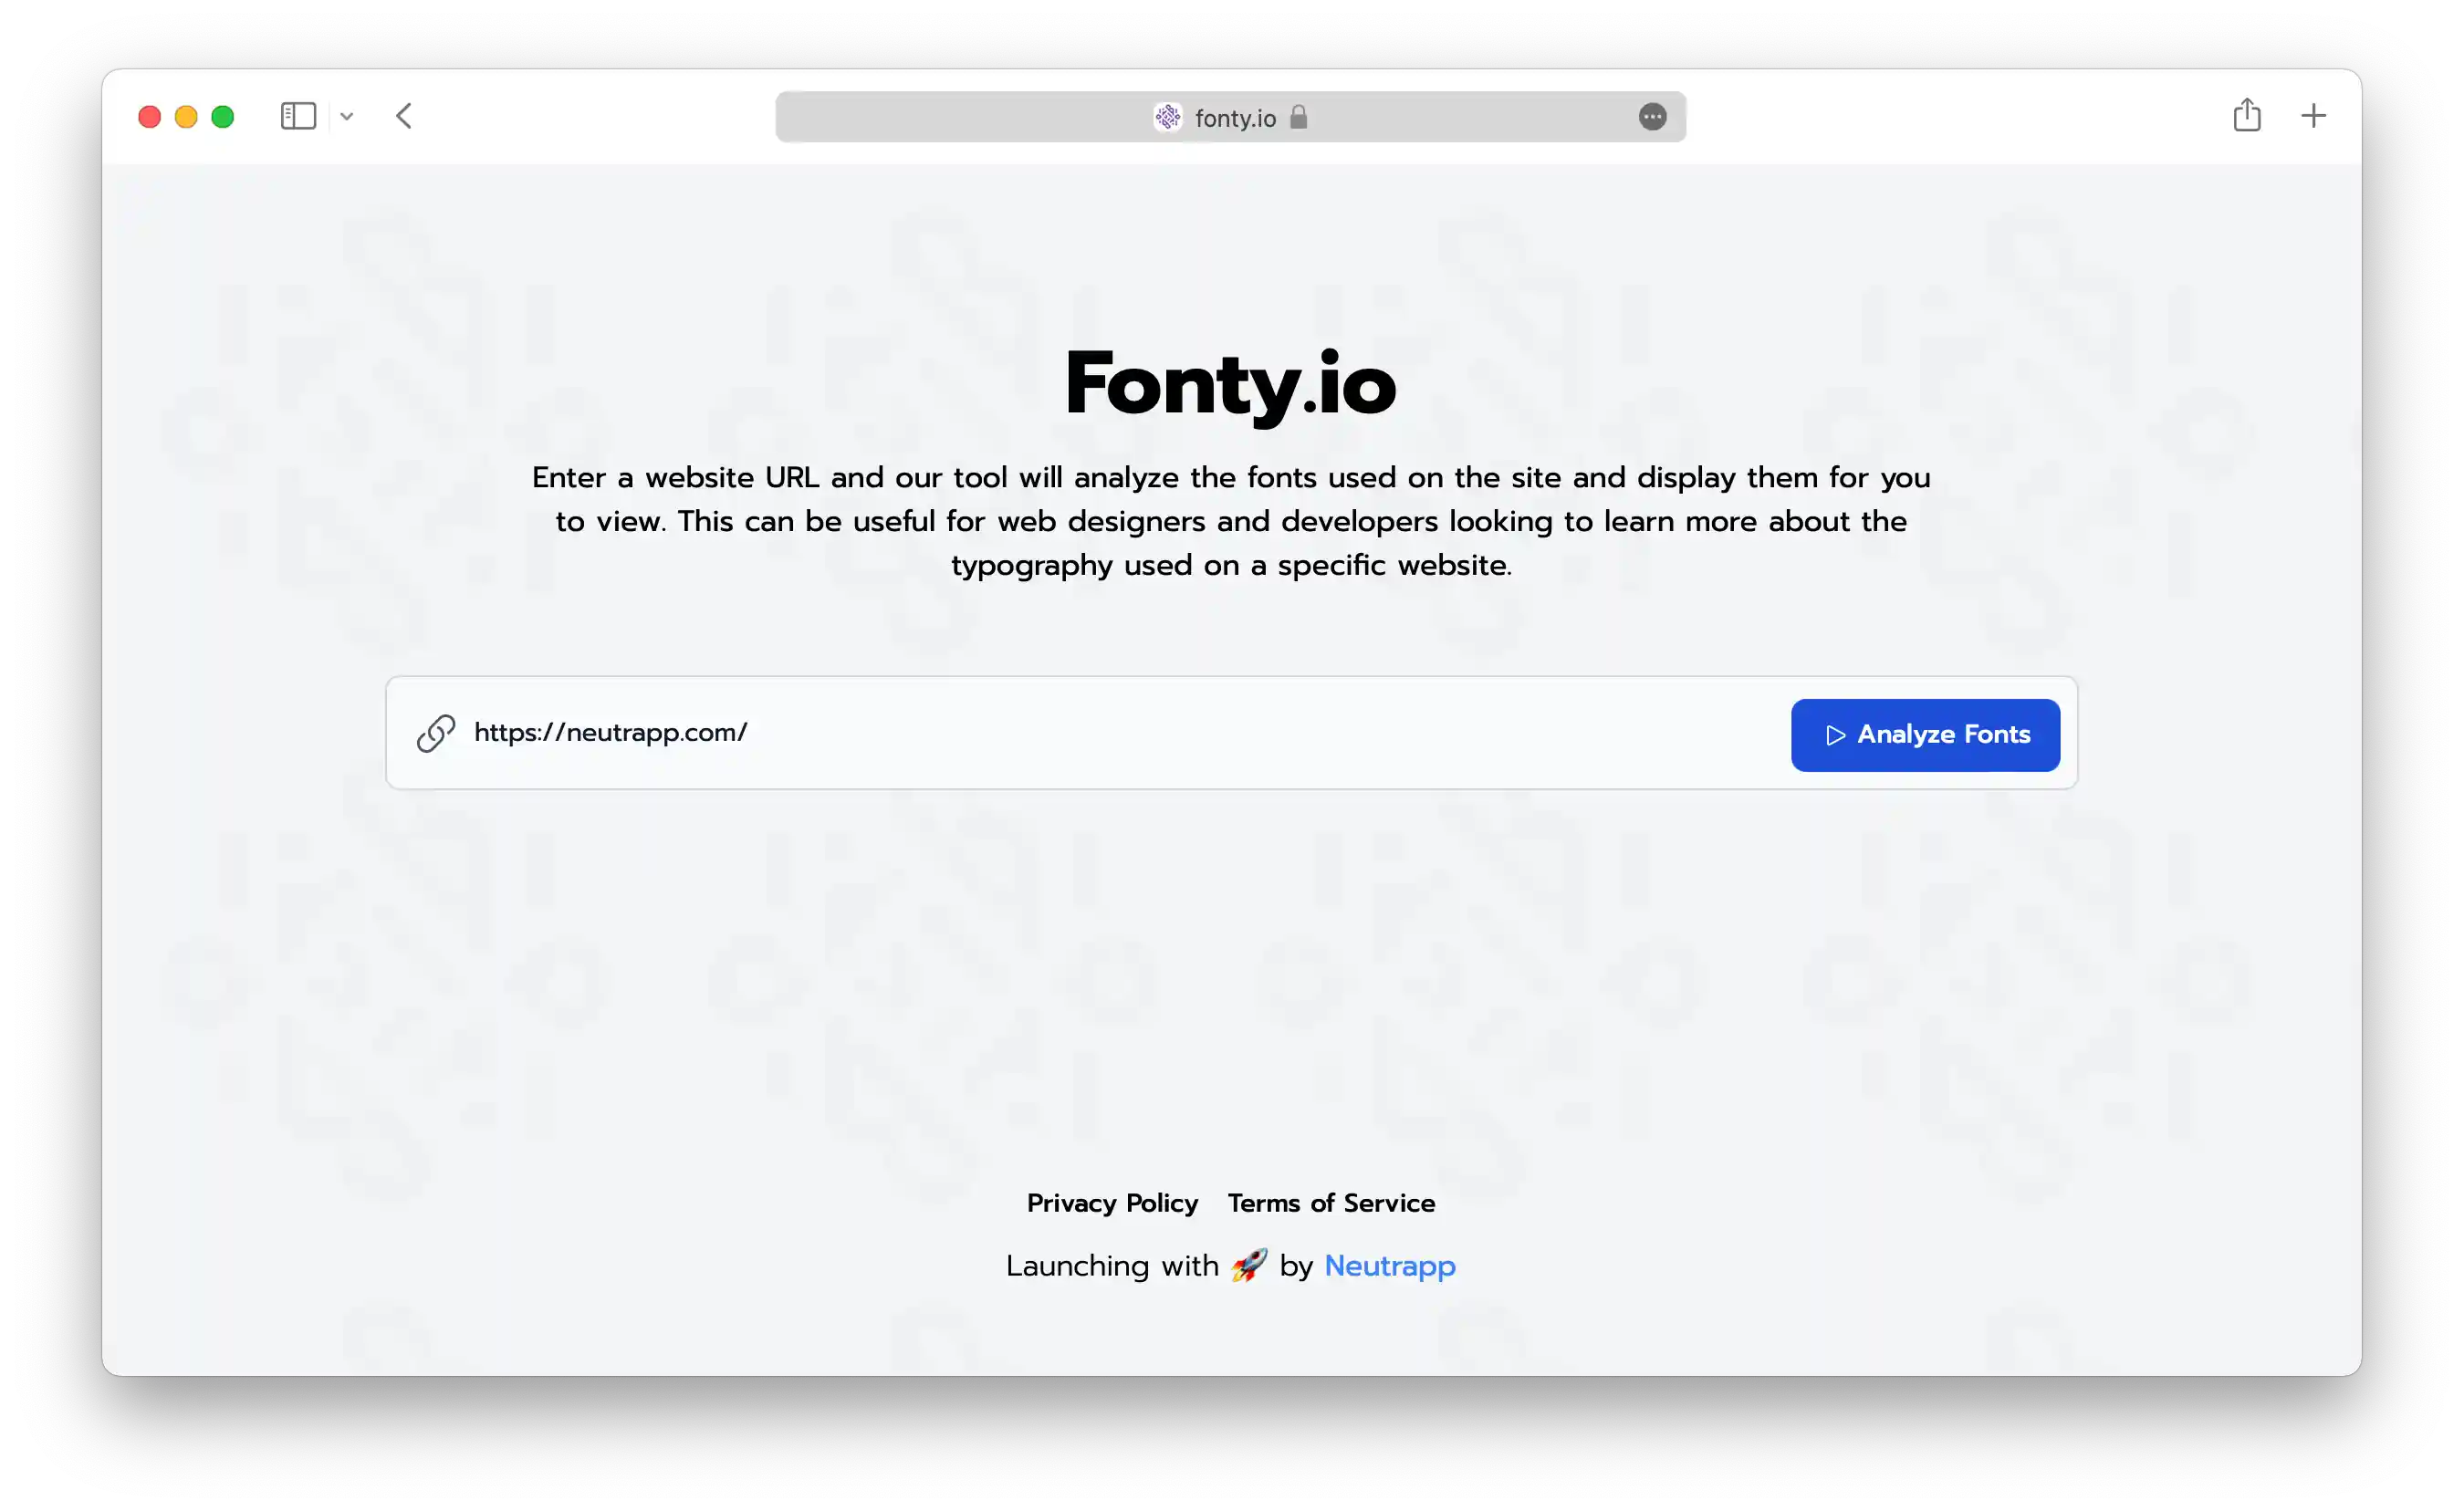 Fonty.io - Home Page